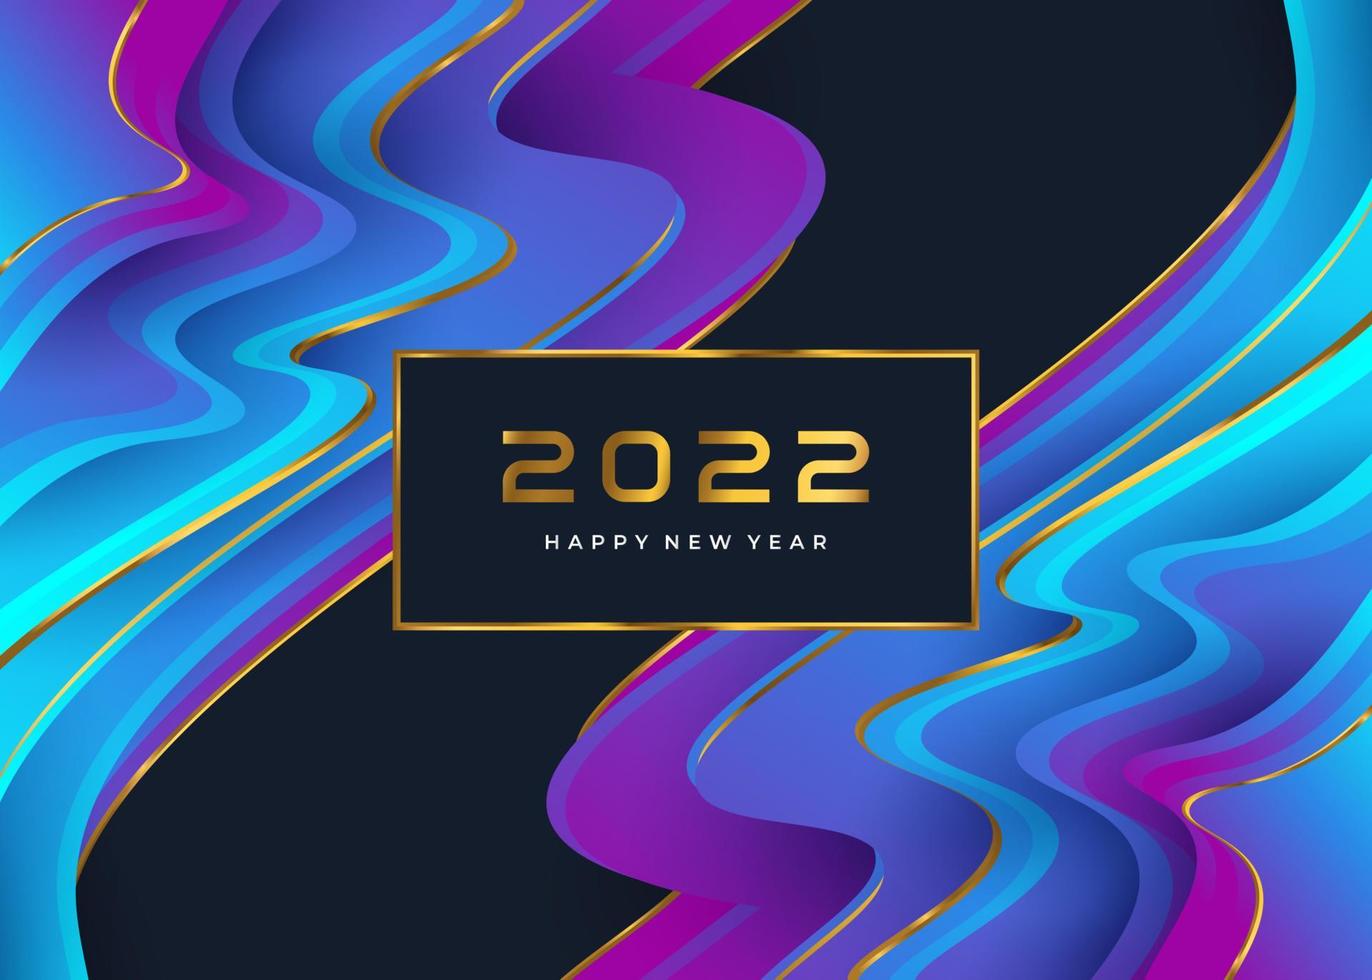 gott nytt år 2022 banner eller affisch med färgglad flytande bakgrundsdesign. nyårsfirande designmall för flygblad, affisch, broschyr, kort, banderoll eller vykort vektor